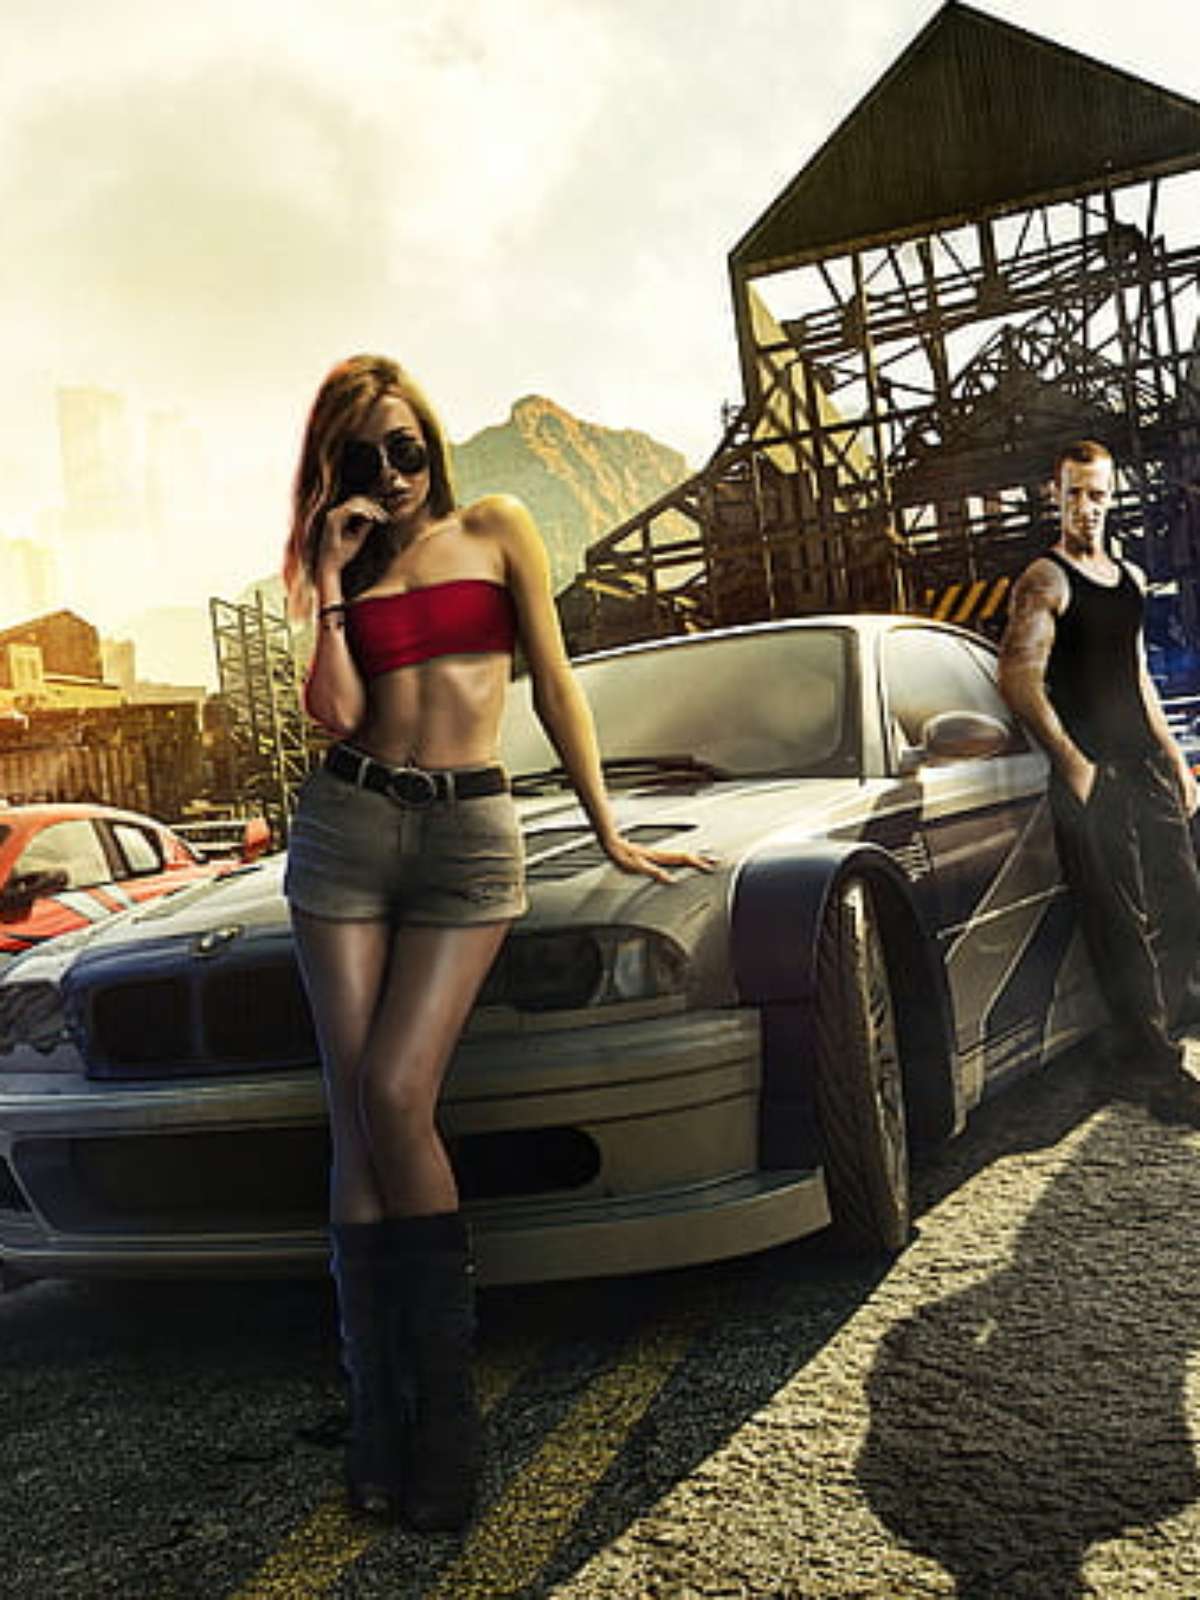 Remake de Need for Speed Most Wanted chega em 2024, diz atriz